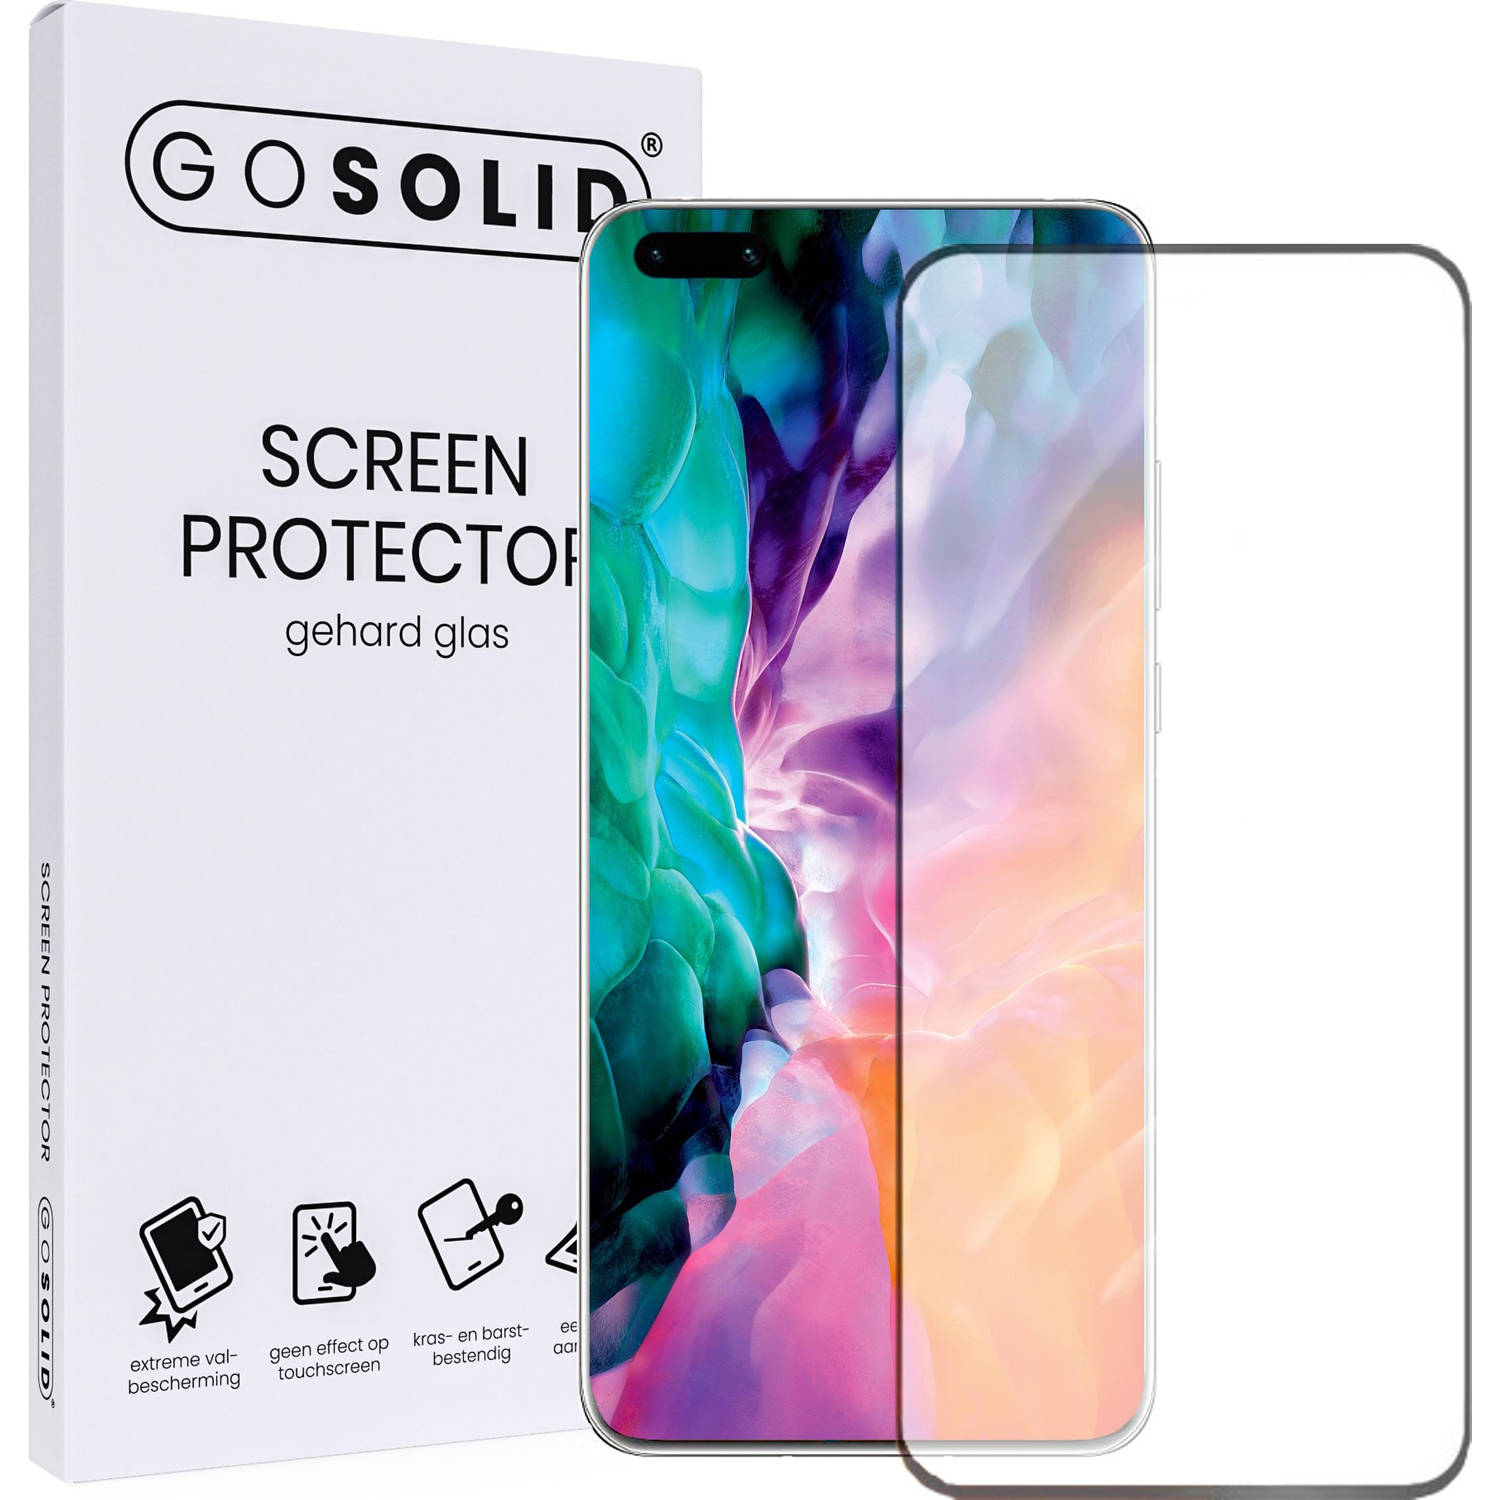 GO SOLID! Screenprotector voor Huawei Nova 7 Pro 5G